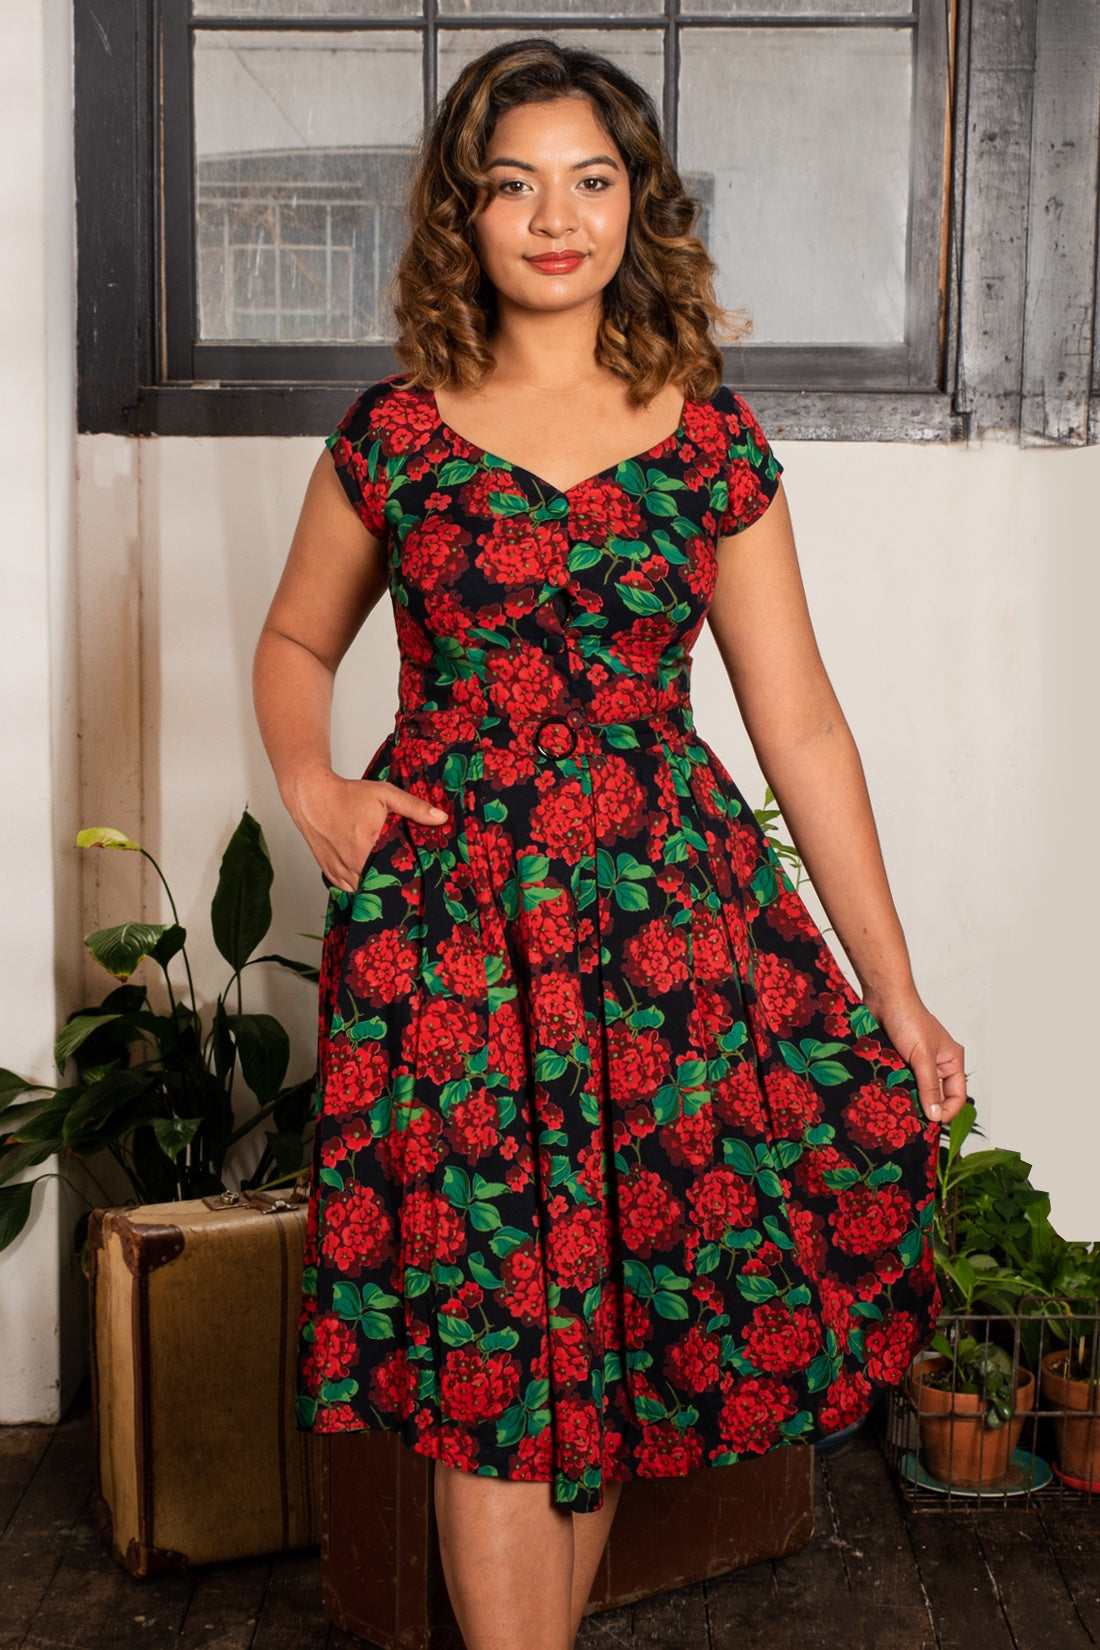 Tuscan Red & Floral Dress Elise Design